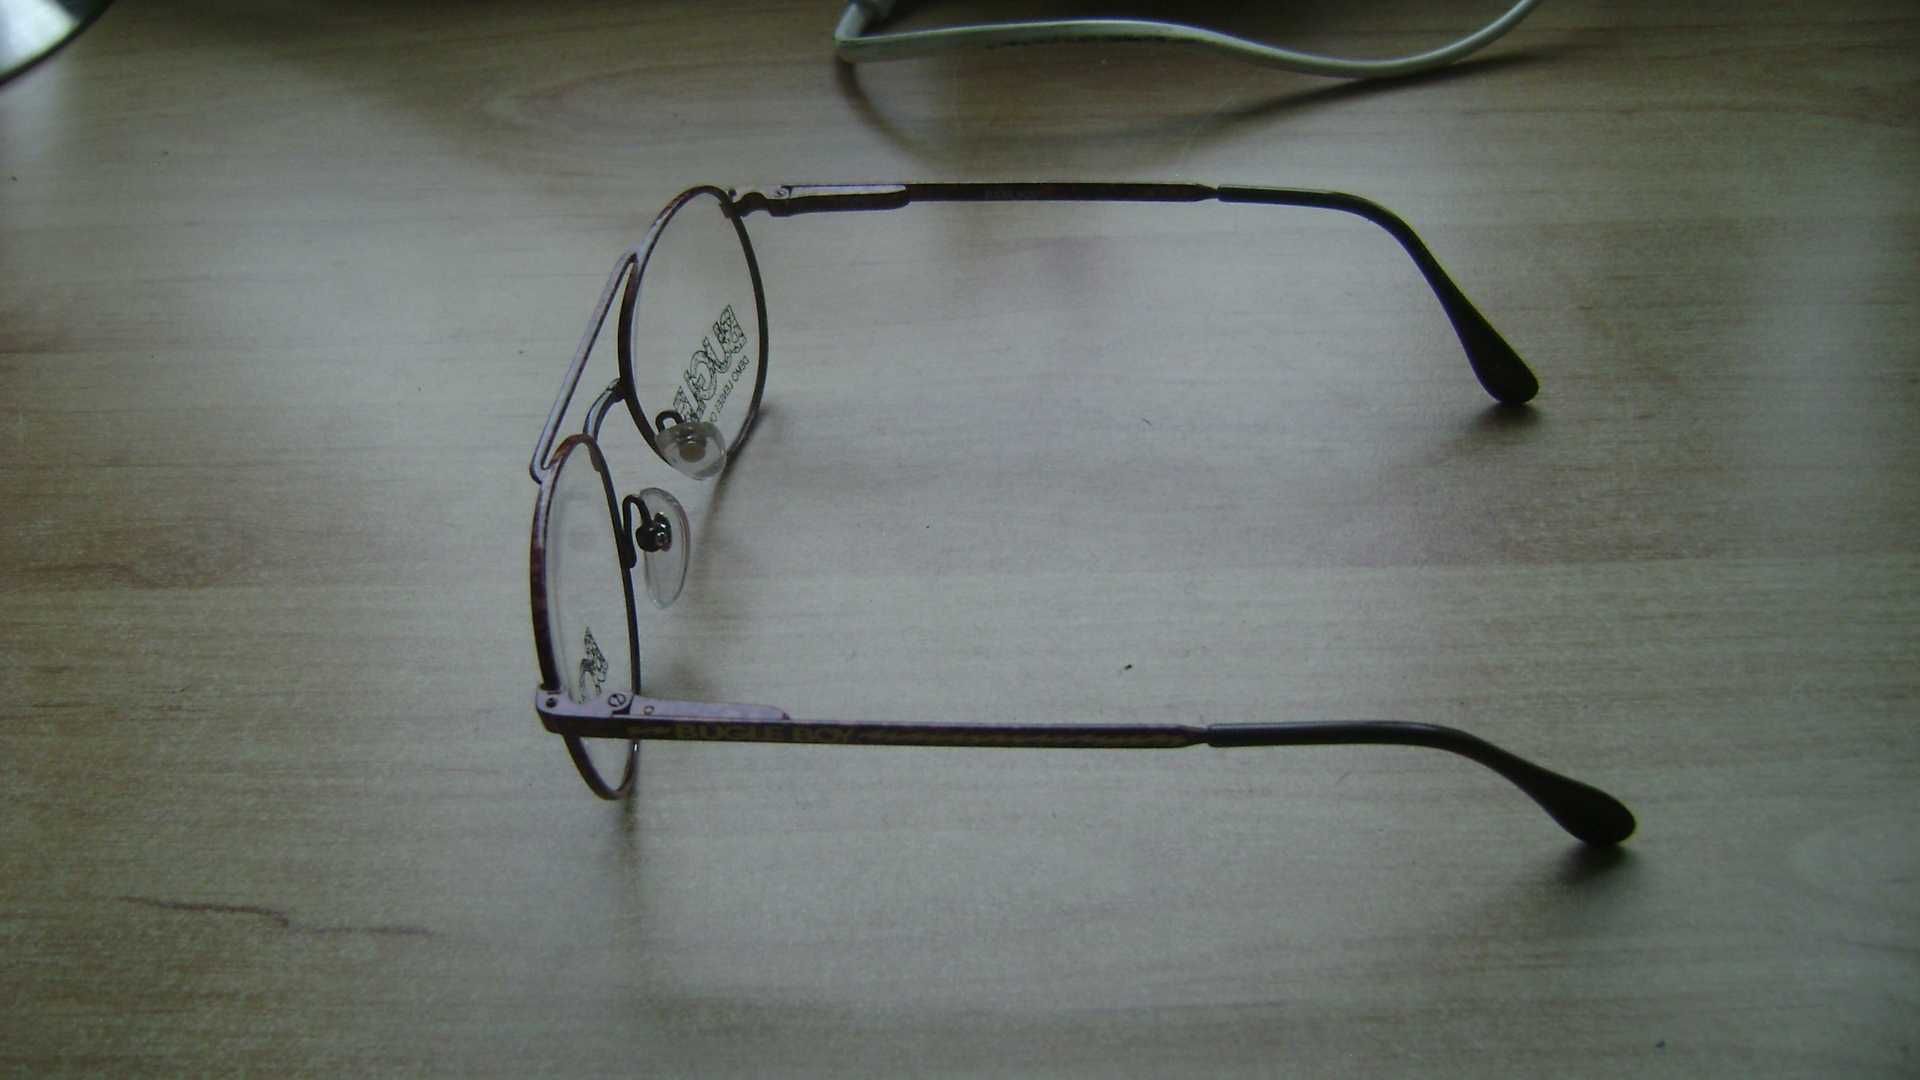 Starocie z PRL - Okulary męskie Zerówki = rozstaw ramion 13 cm